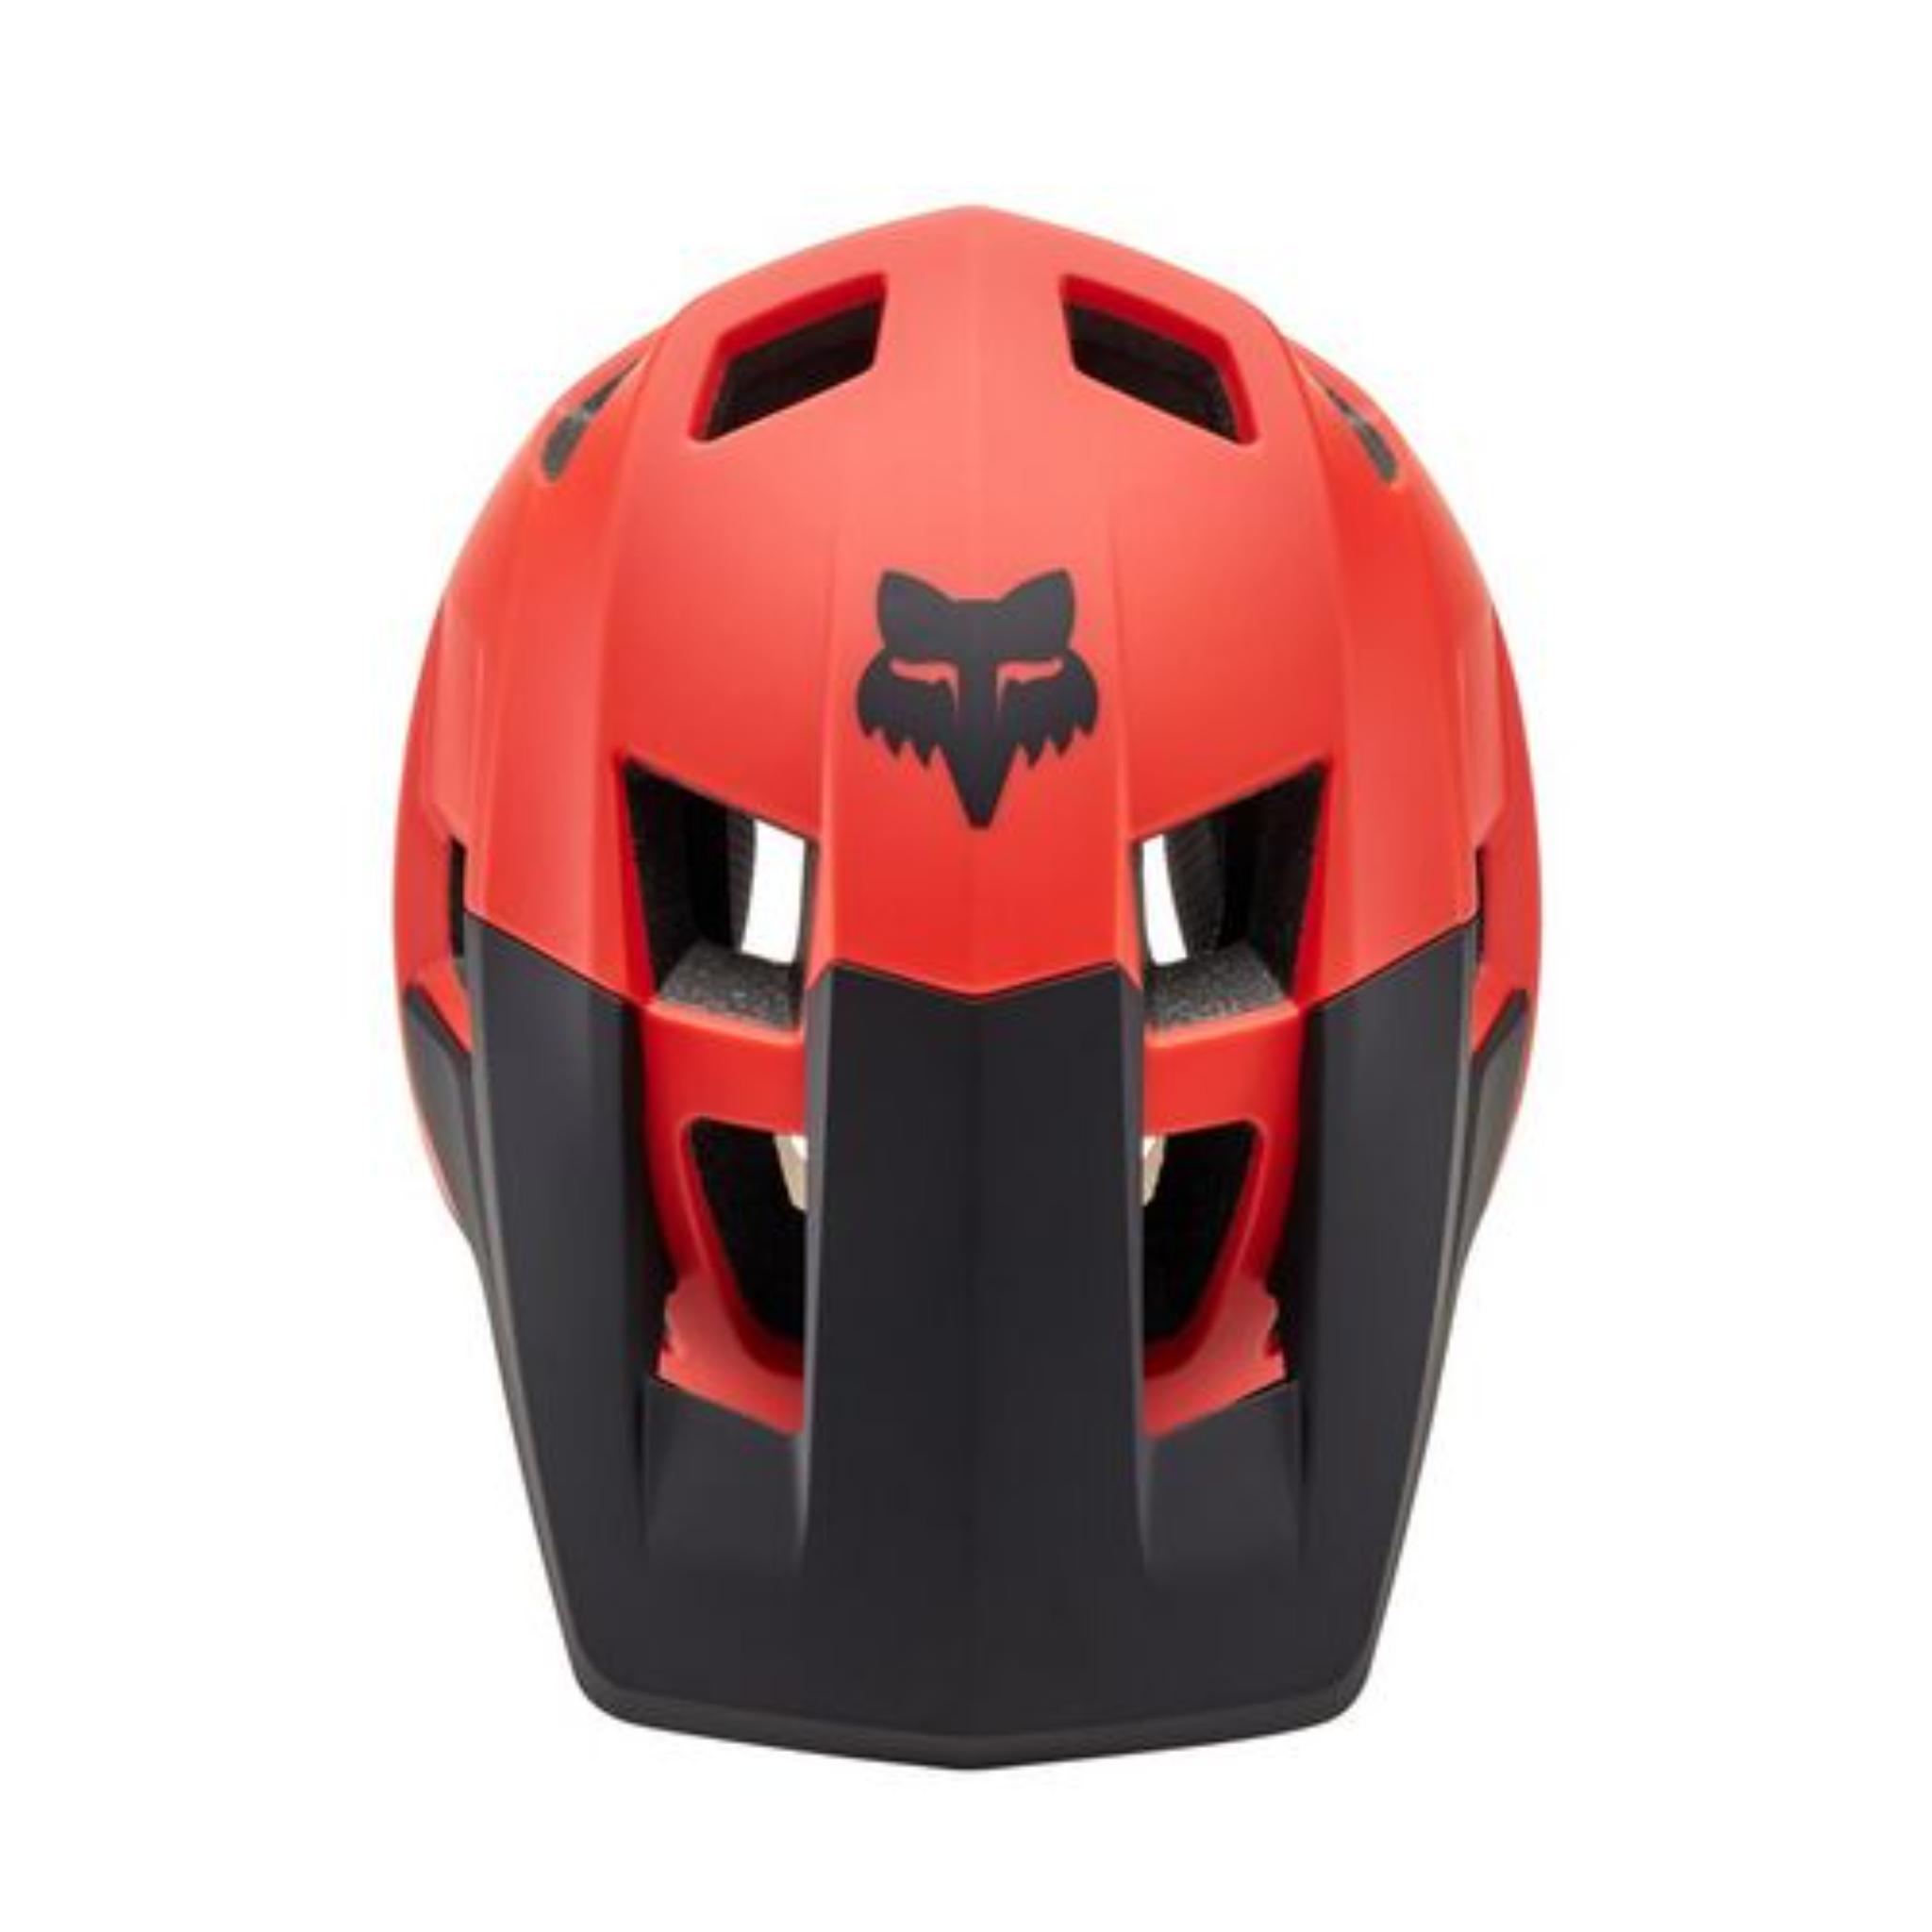 Fox Dropframe MIPS Helmet